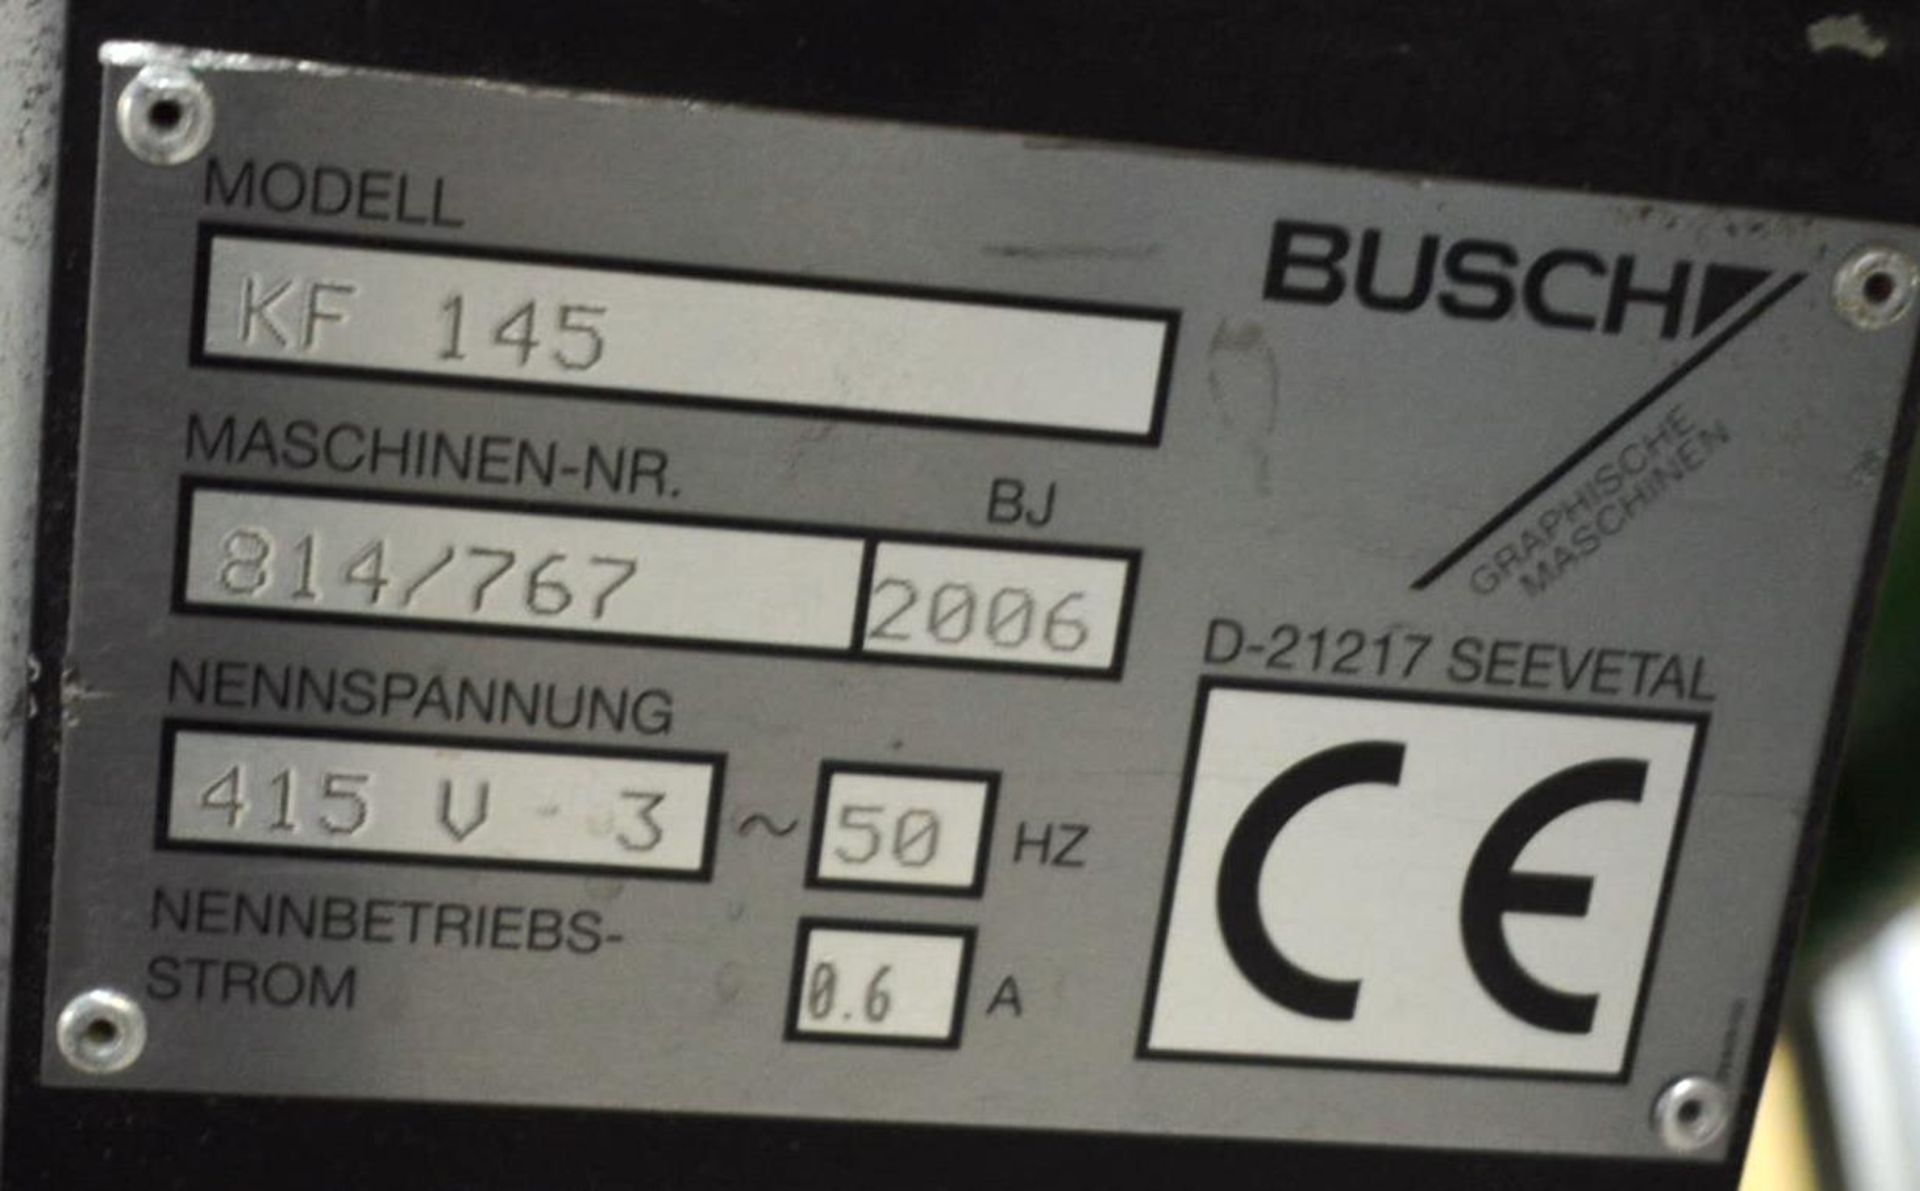 Busch KF 145 350mm wide WASTE CONVEYOR, serial no. 814/767, year of manufacture 2006, 1.6m discharge - Bild 2 aus 2